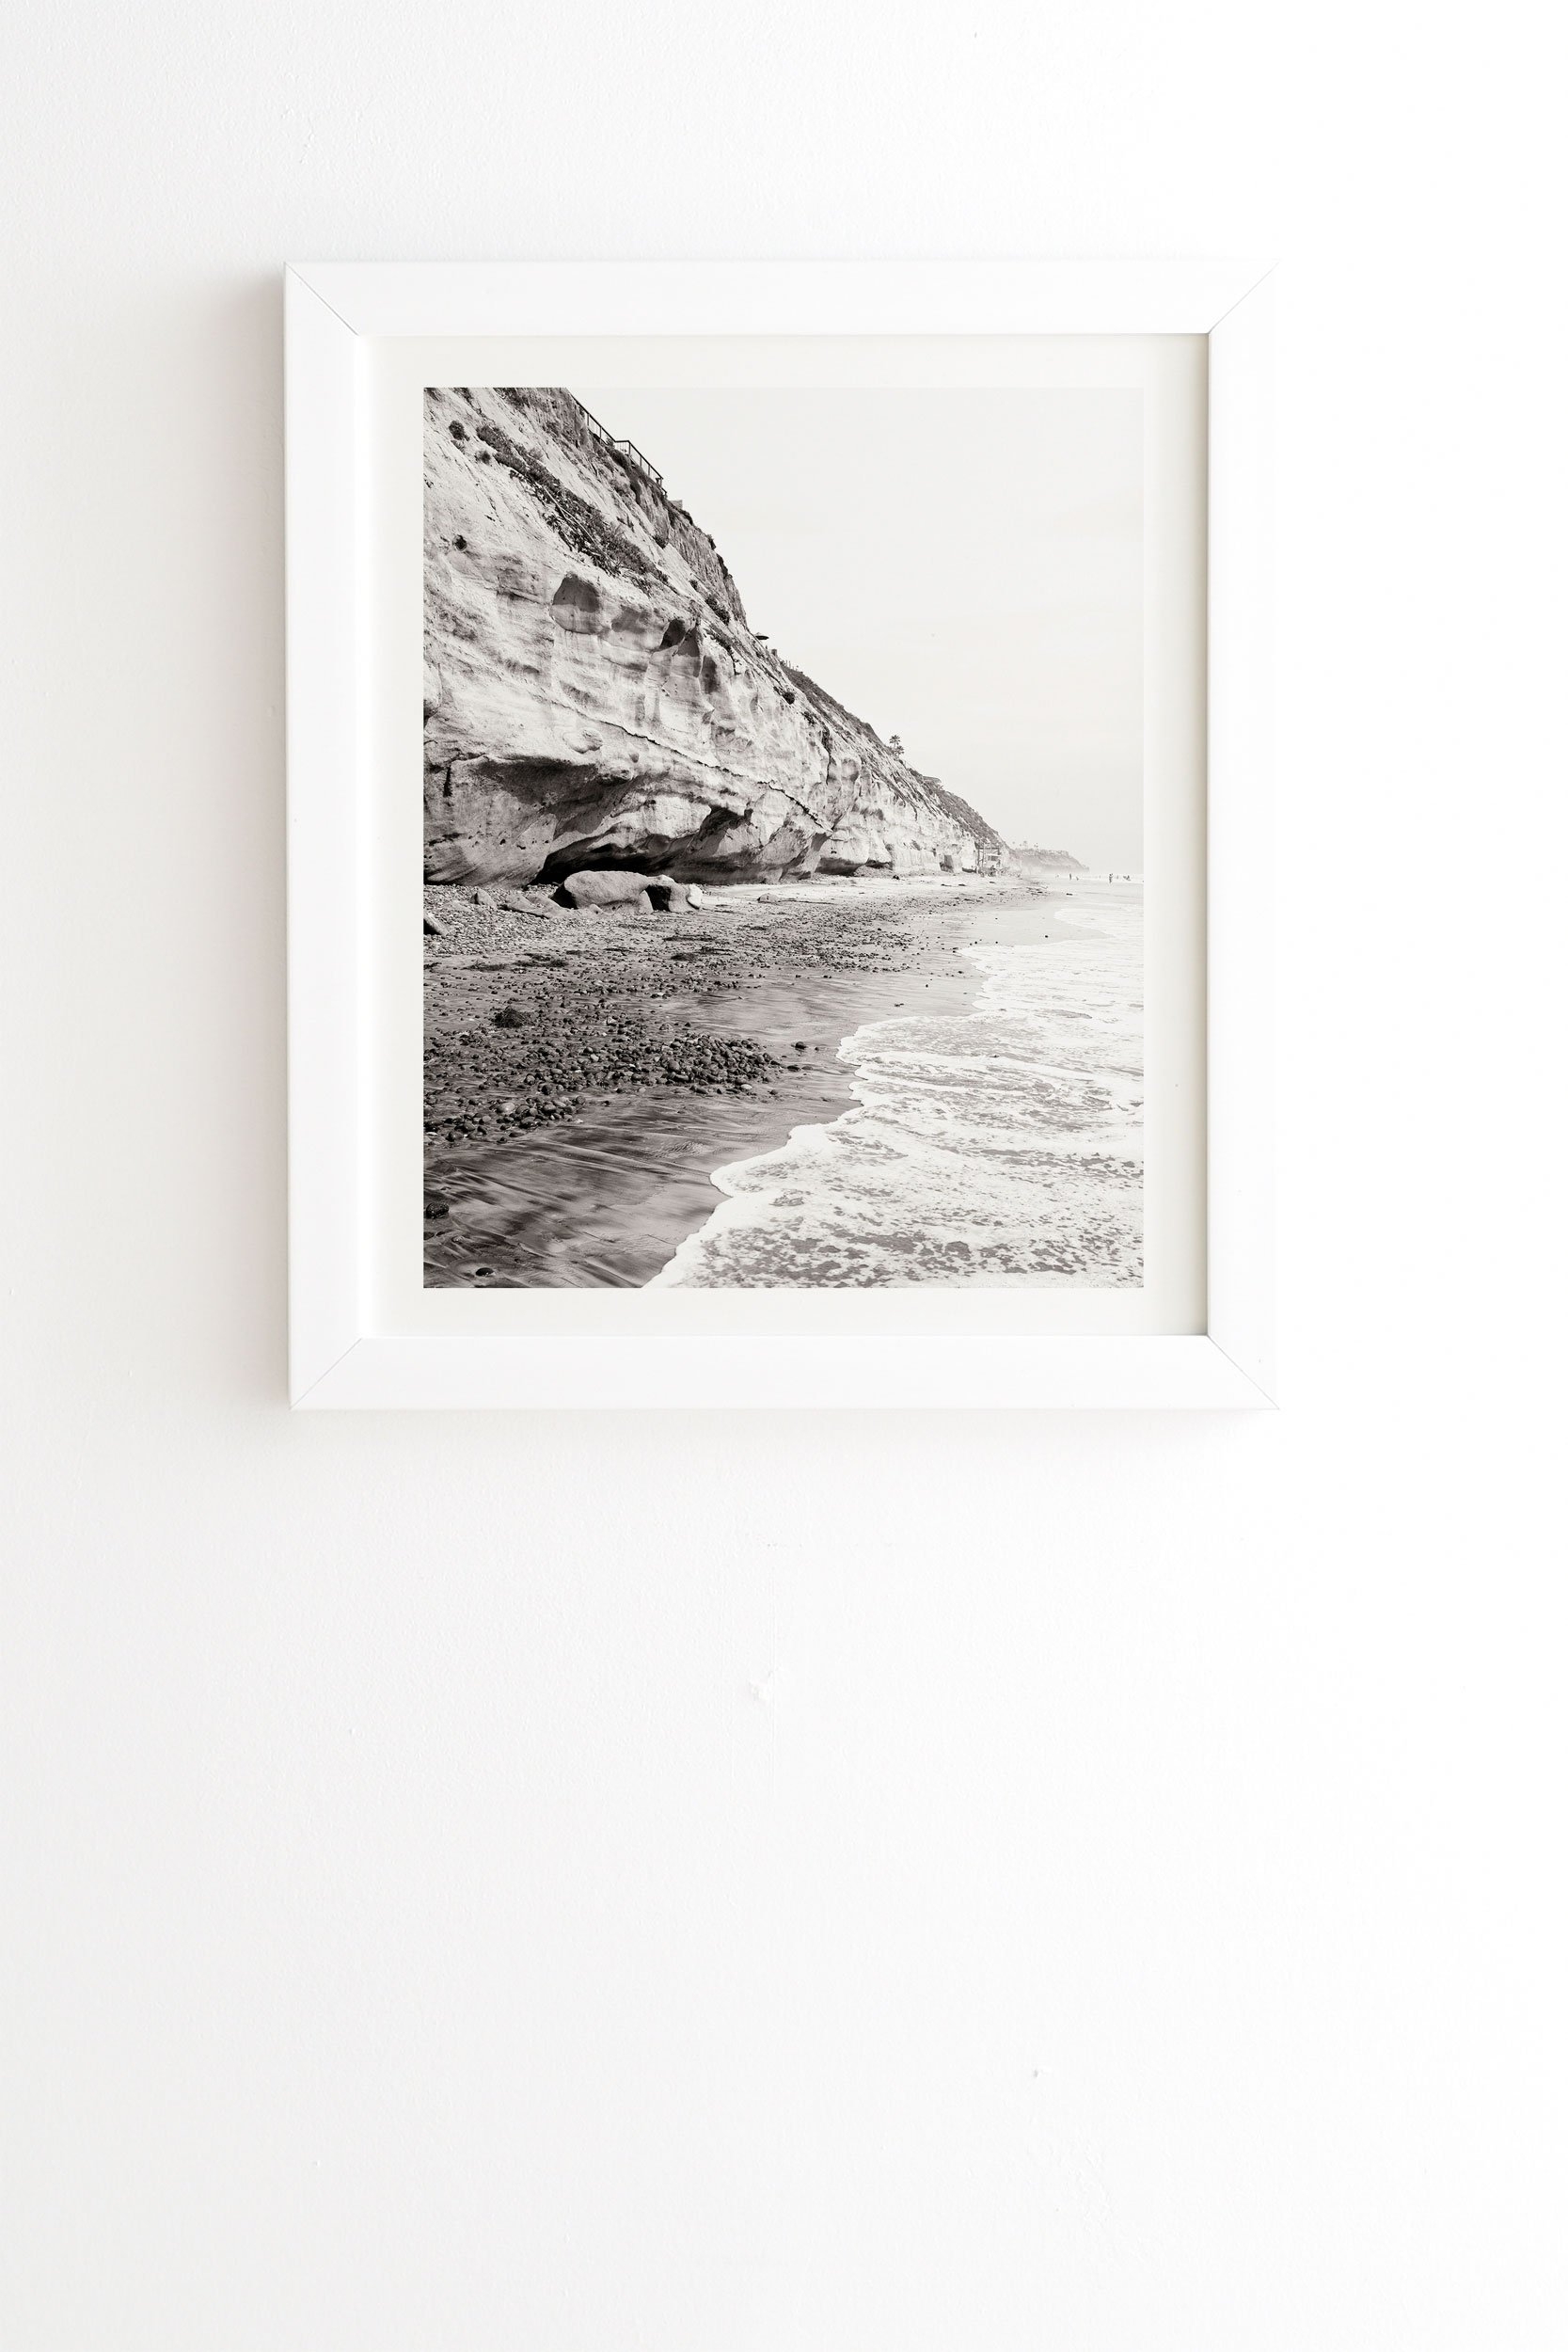 Bree Madden Stonesteps White Framed Wall Art - 20" x 20" - Image 0